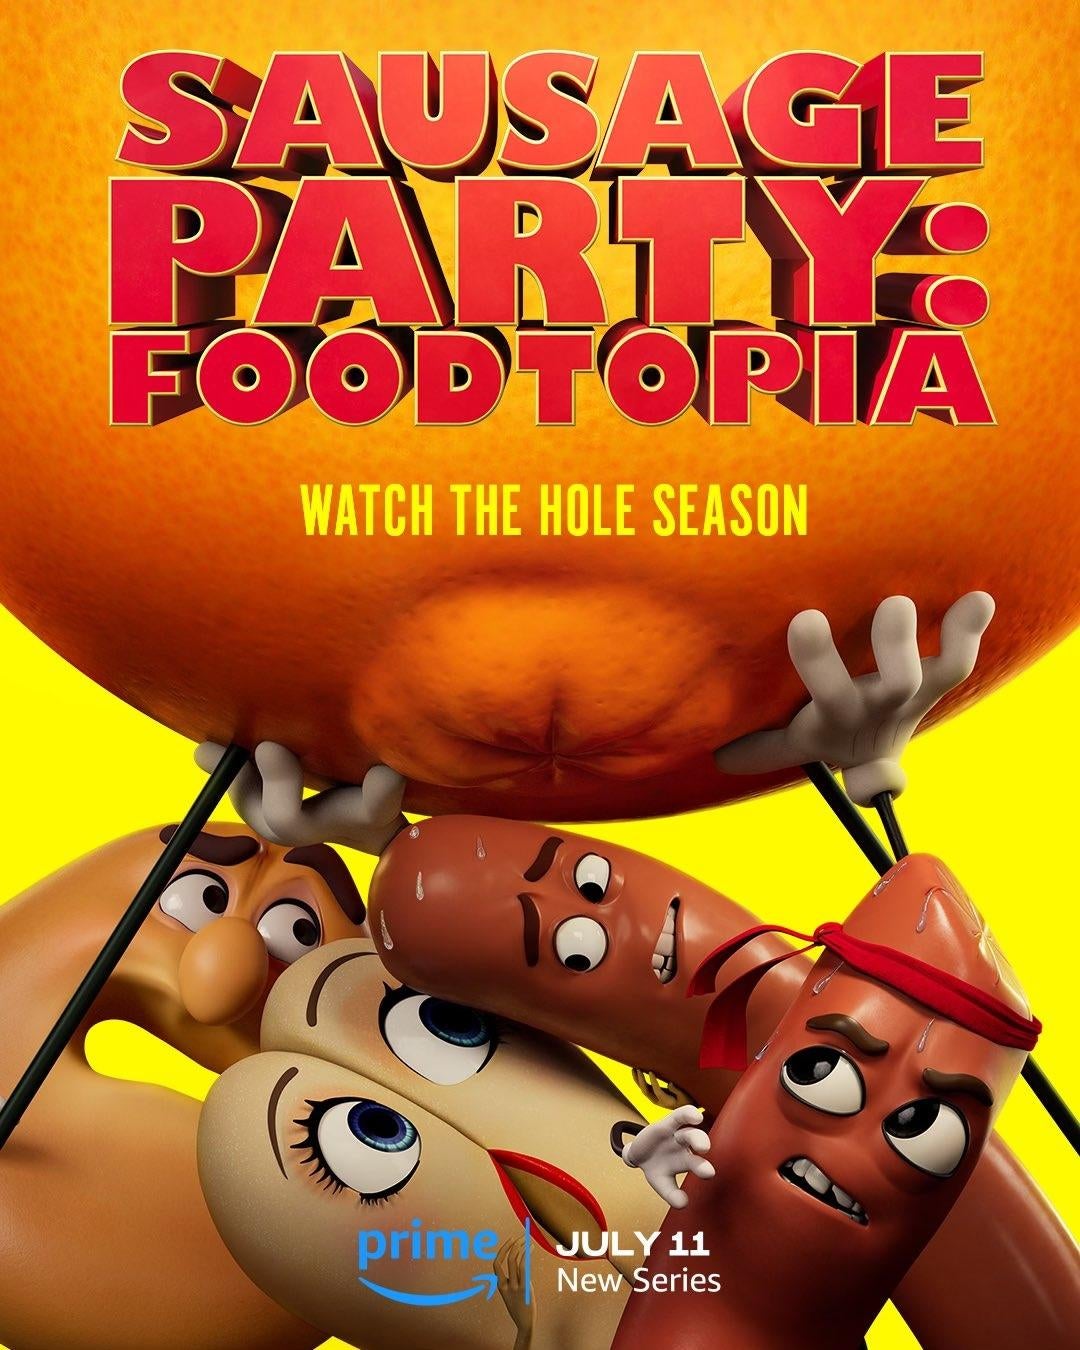 Колбасная вечеринка: Foodtopia установила дату выхода с первым постером